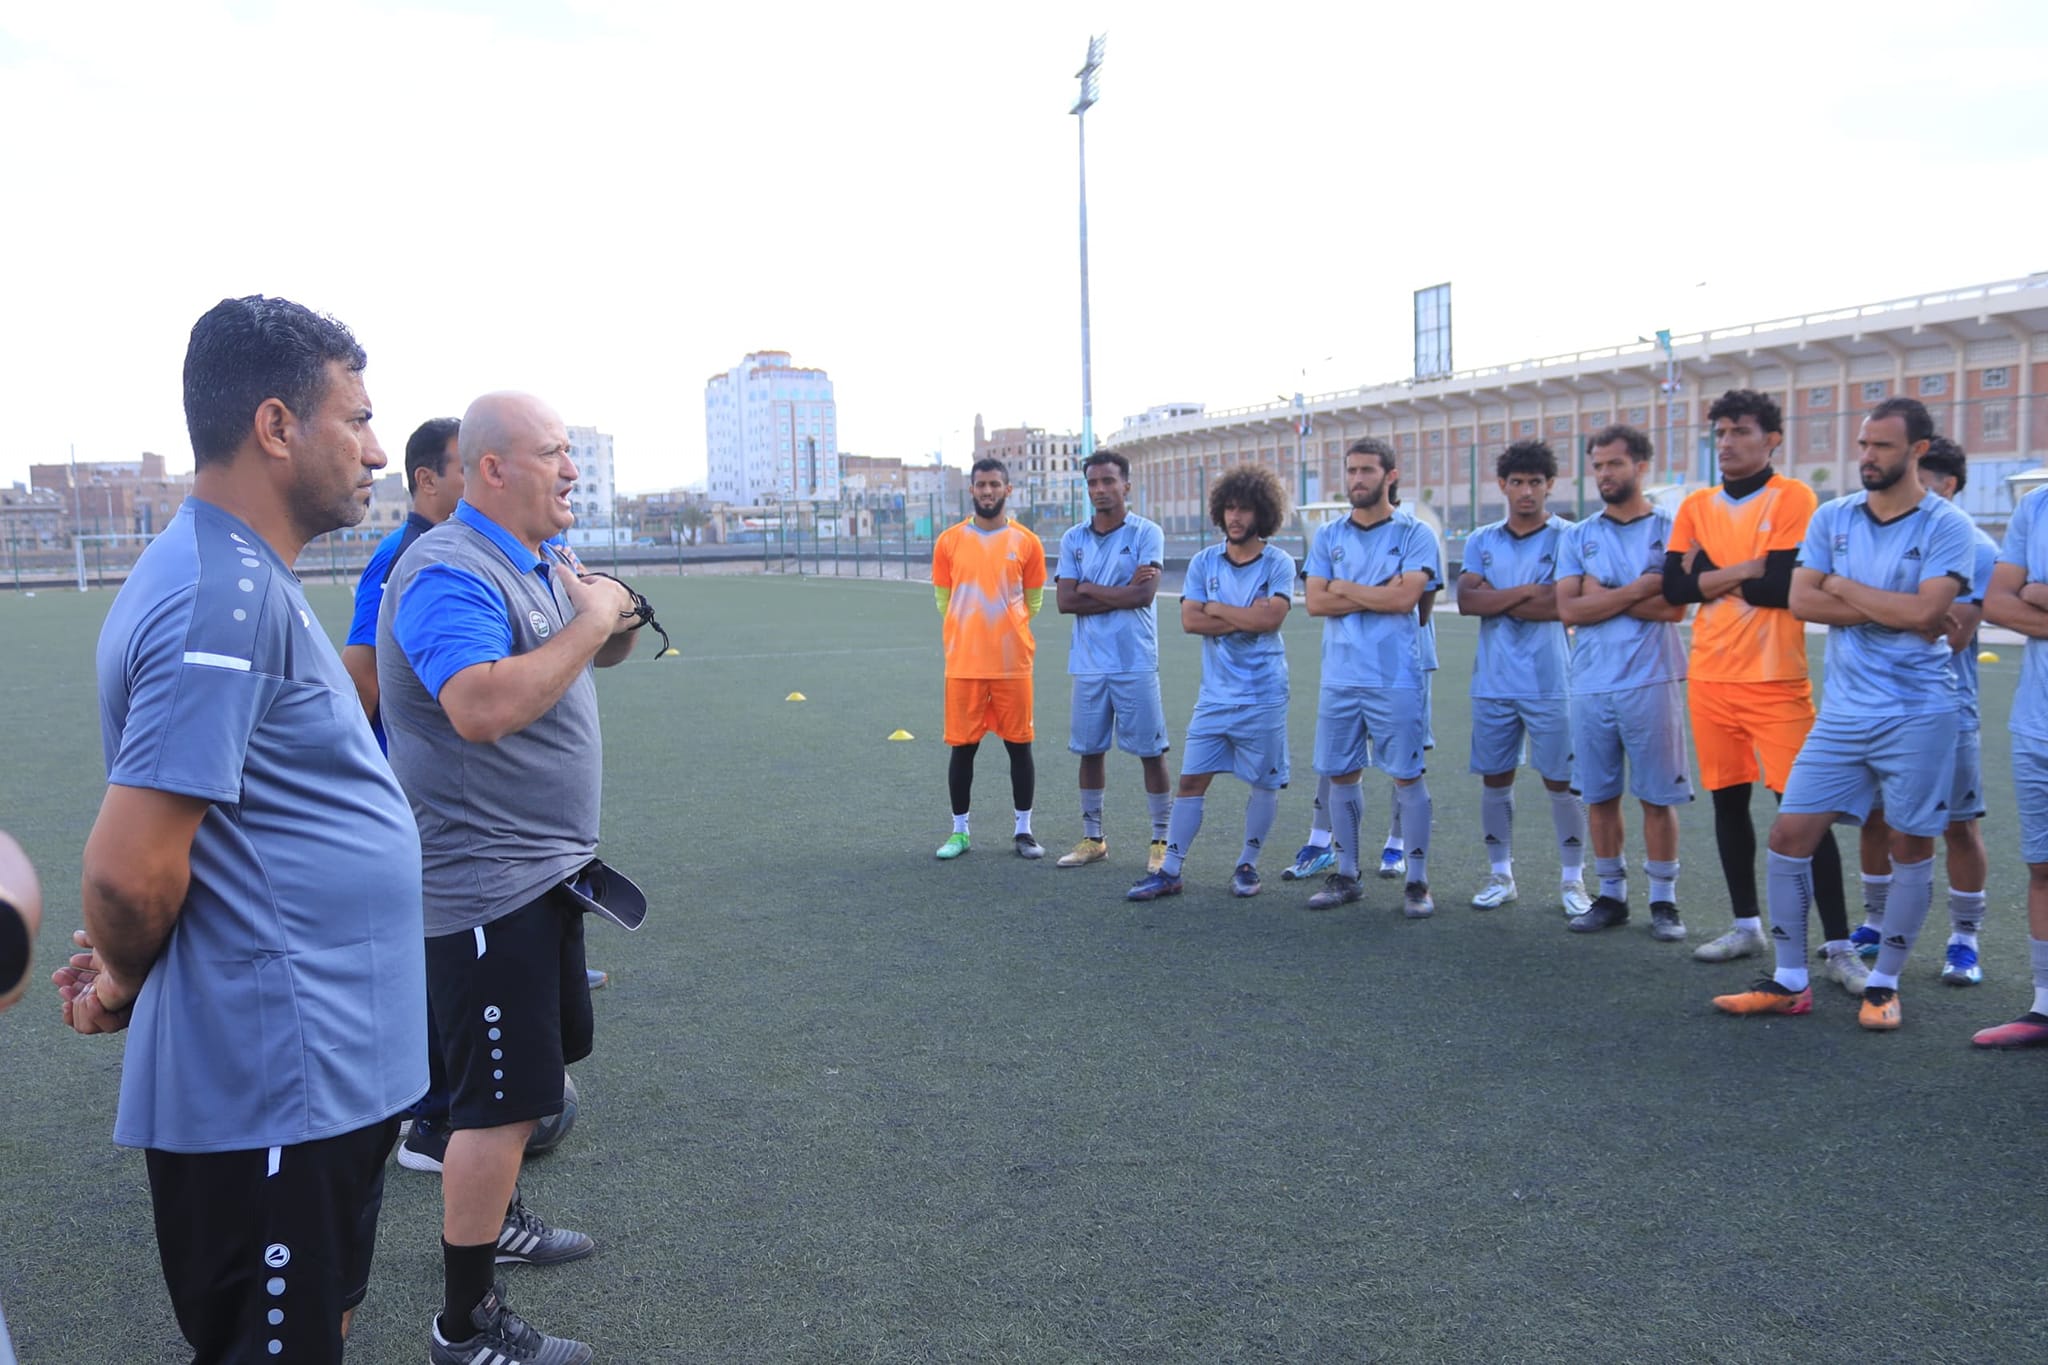 المنتخب الوطني يجري حصة تدريبية على الملعب الفرعي بمدينة الثورة الرياضية